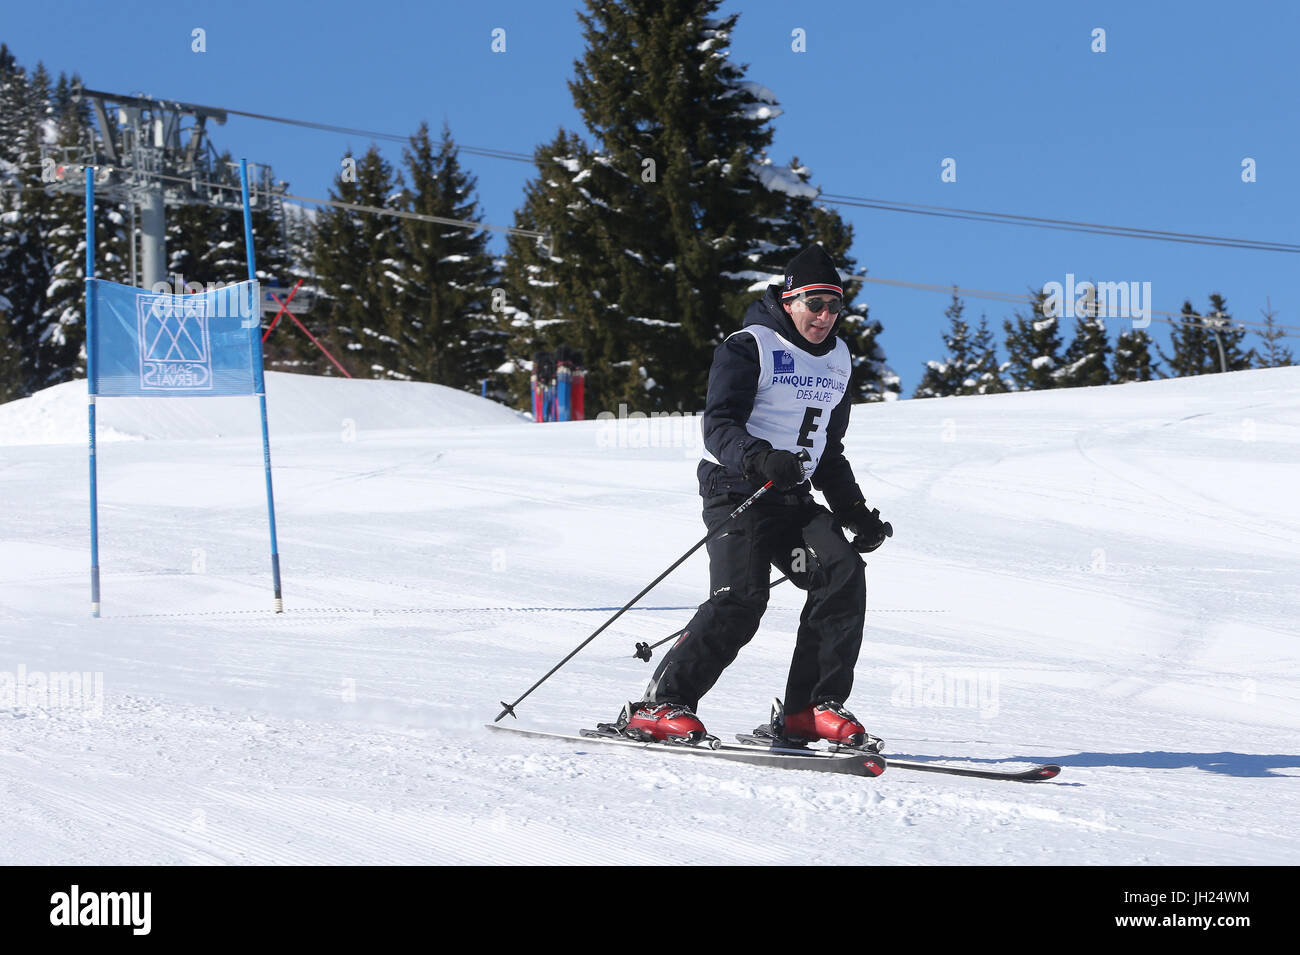 Elie Semoun faisant du ski dans les Alpes. La France. La France. Banque D'Images